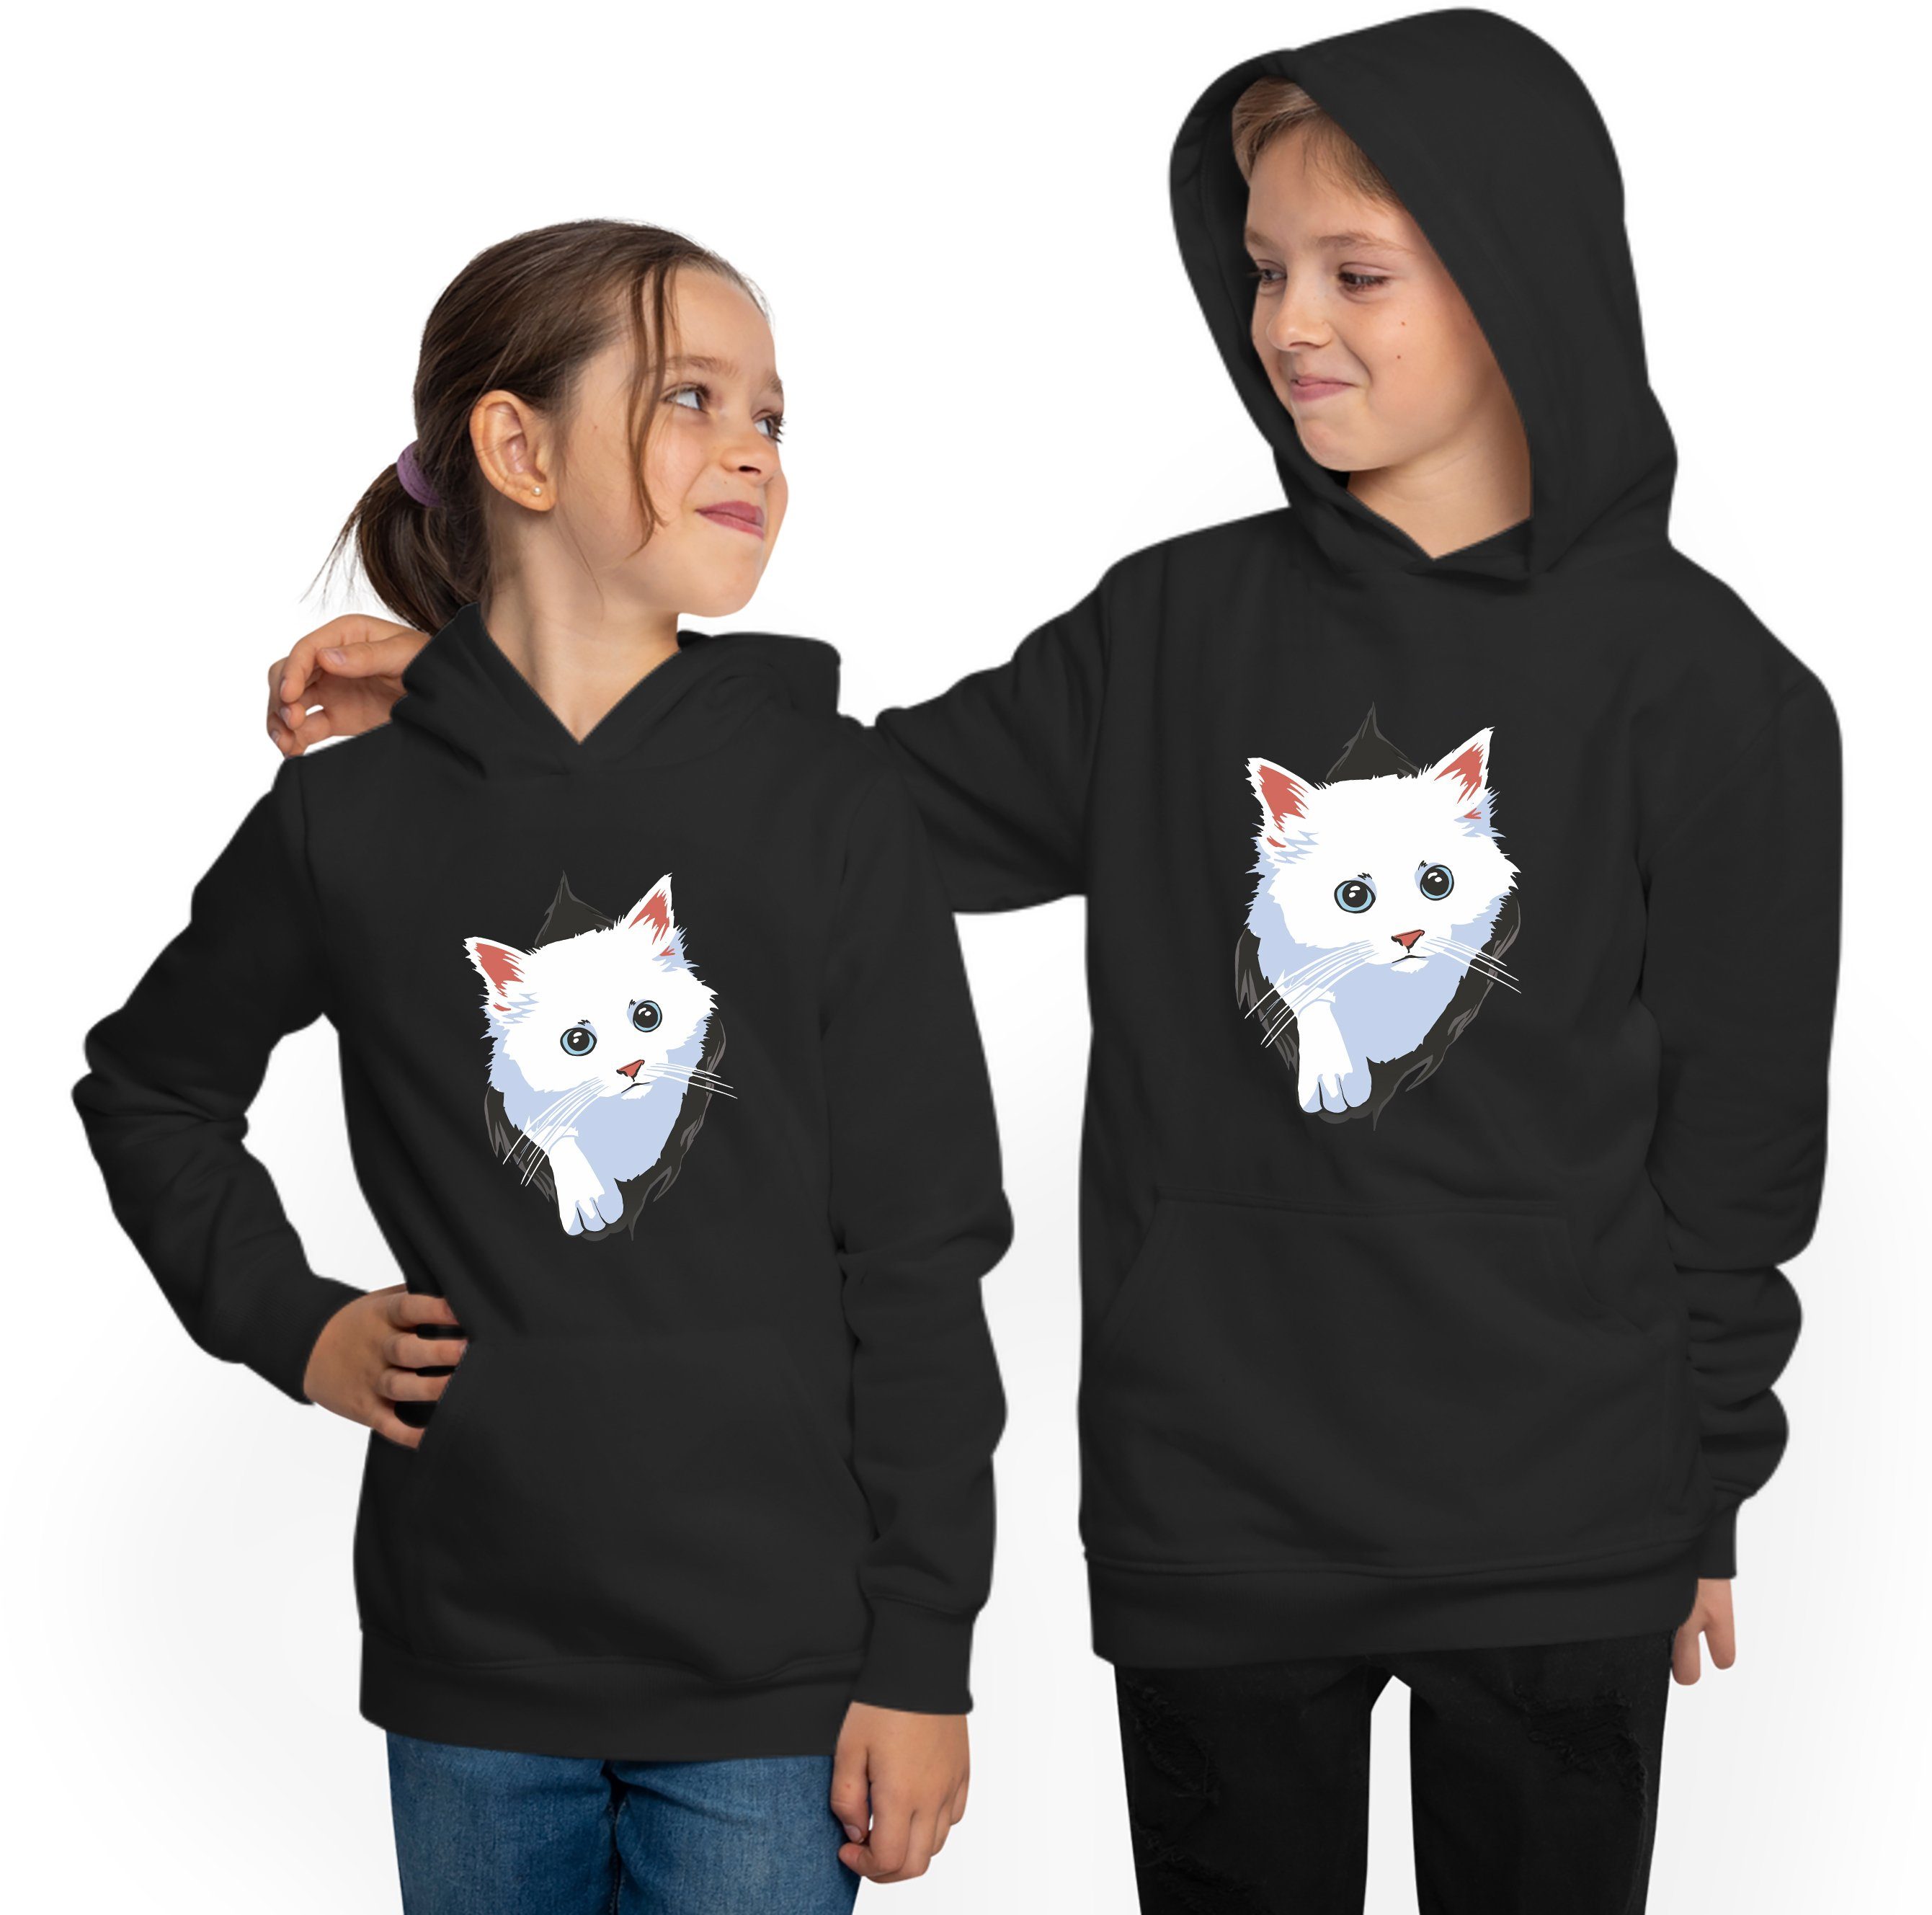 MyDesign24 Hoodie Kinder Kapuzen Sweatshirt Kapuzensweater i113 Shirt weiße - Aufdruck, Katze mit dem aus